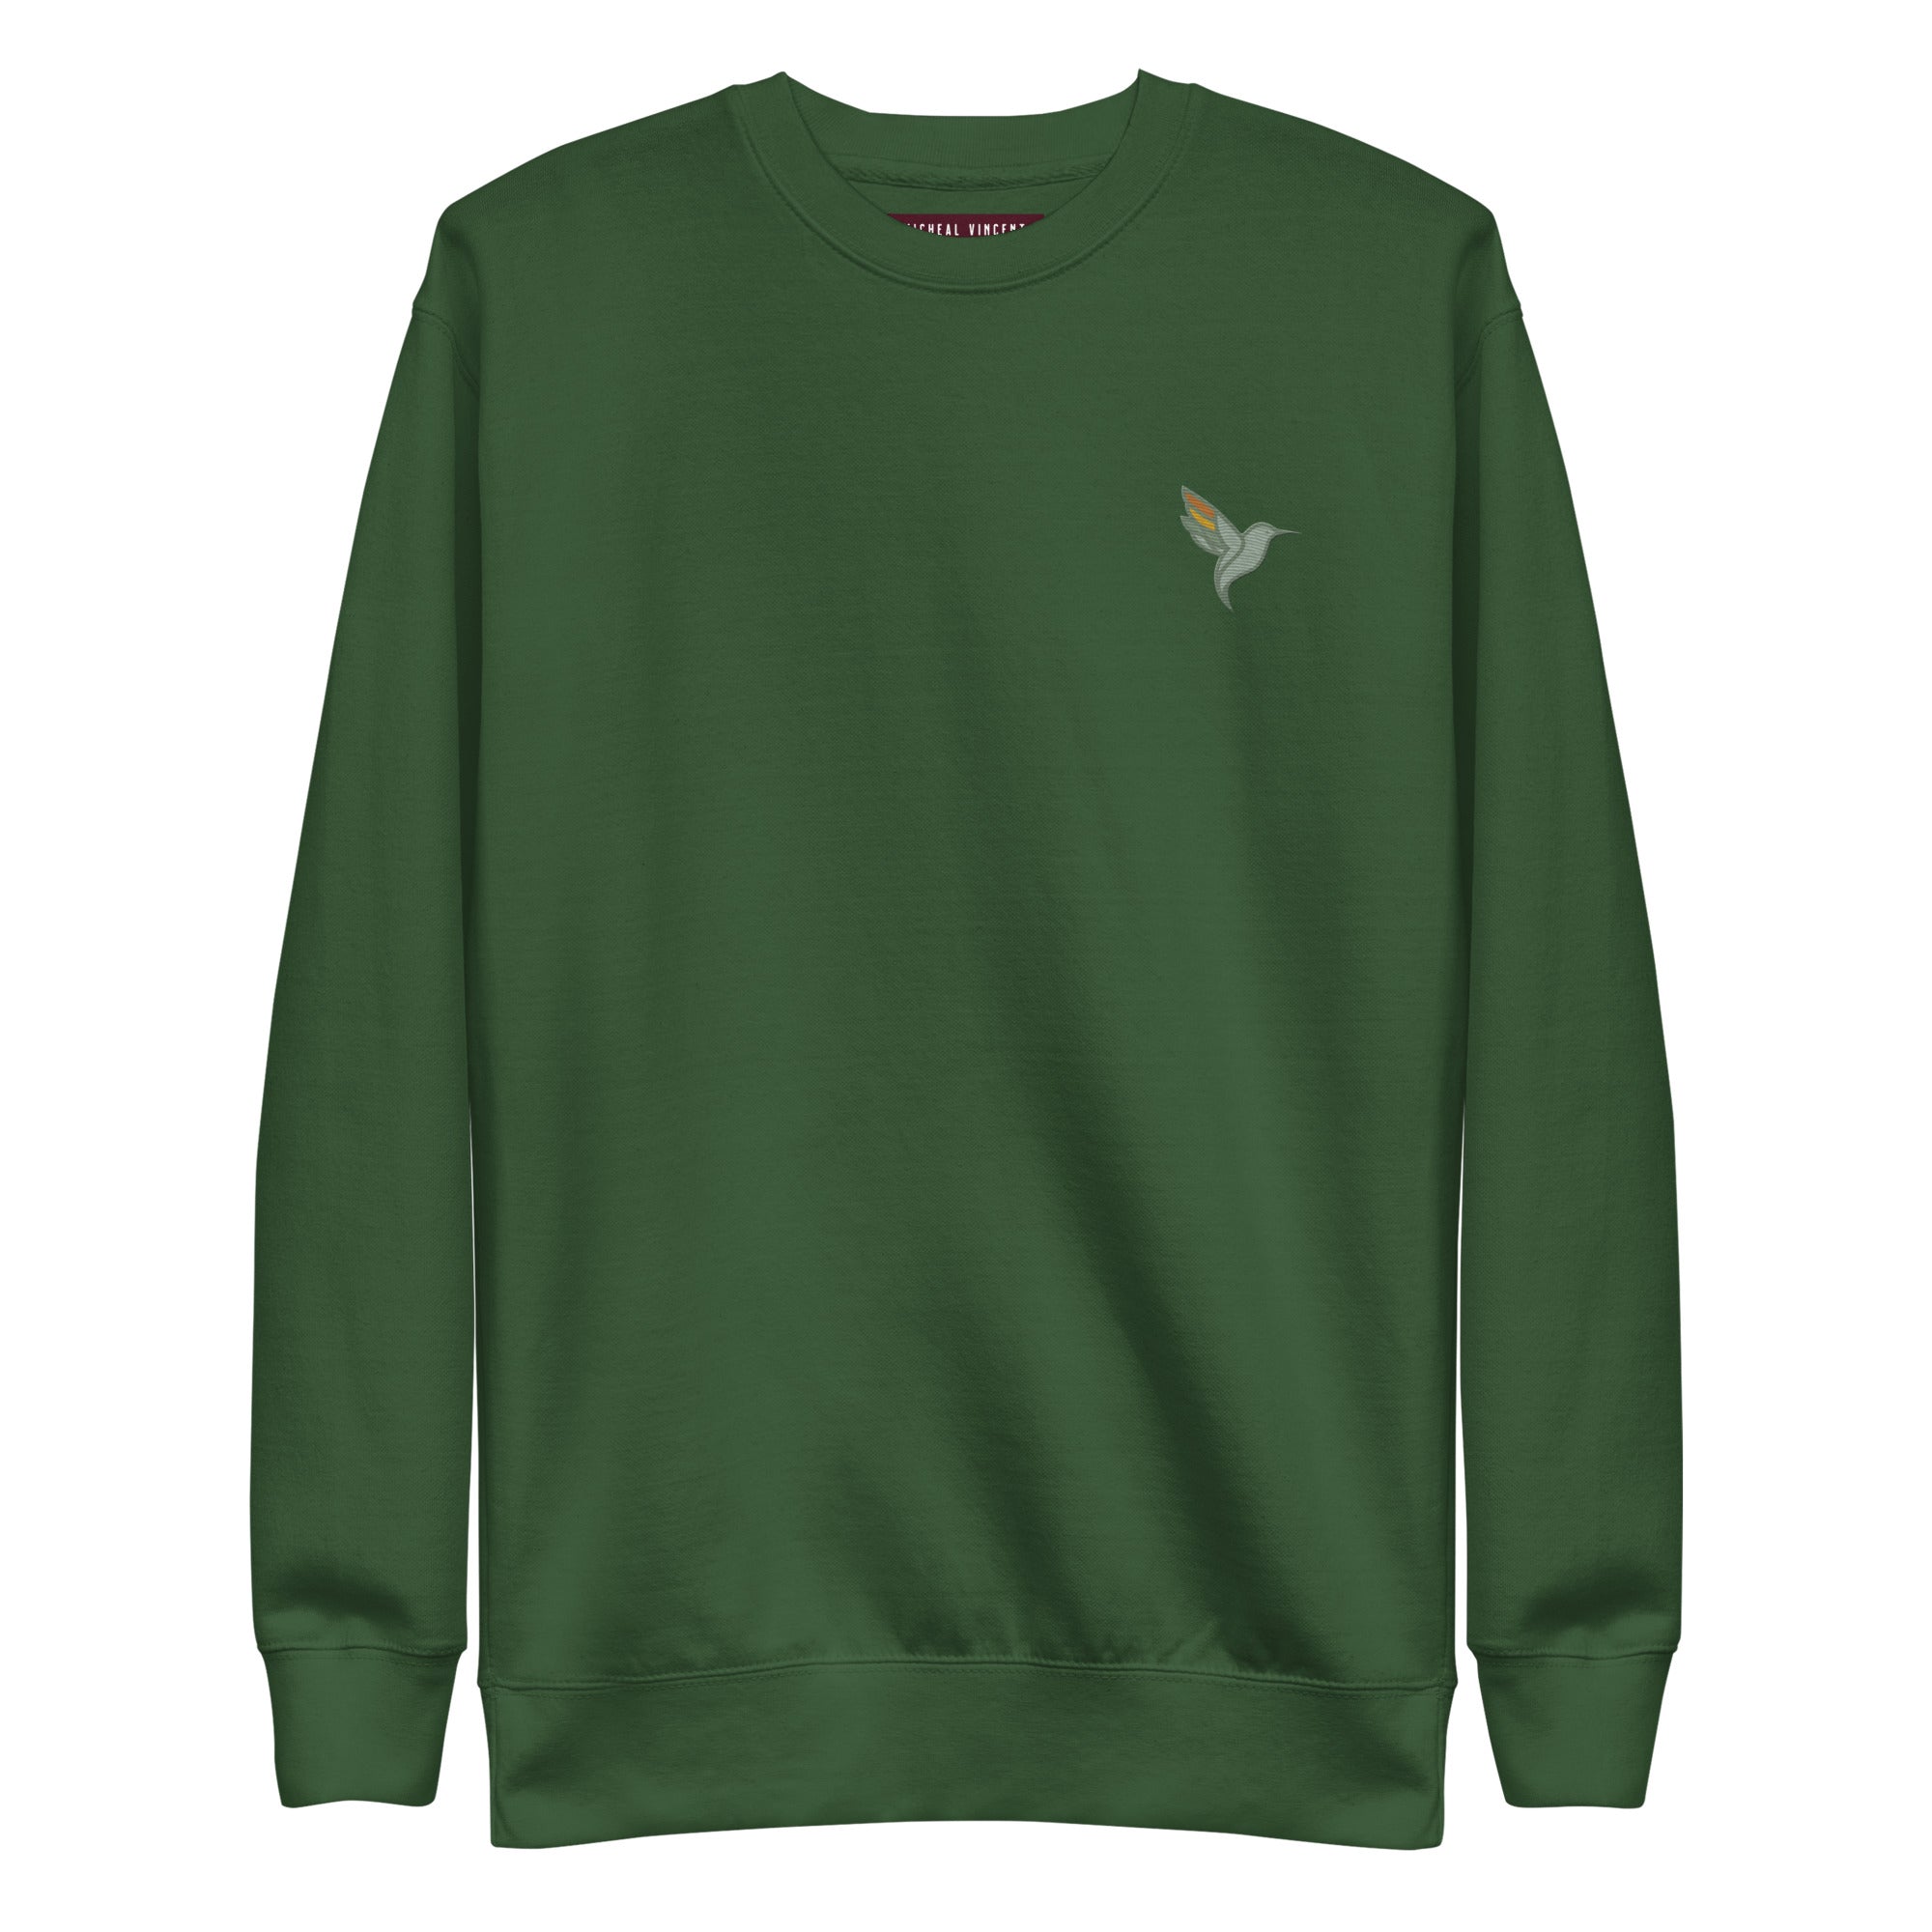 unisex-premium-sweatshirt-forest-green-front-652f1288747a6.jpg